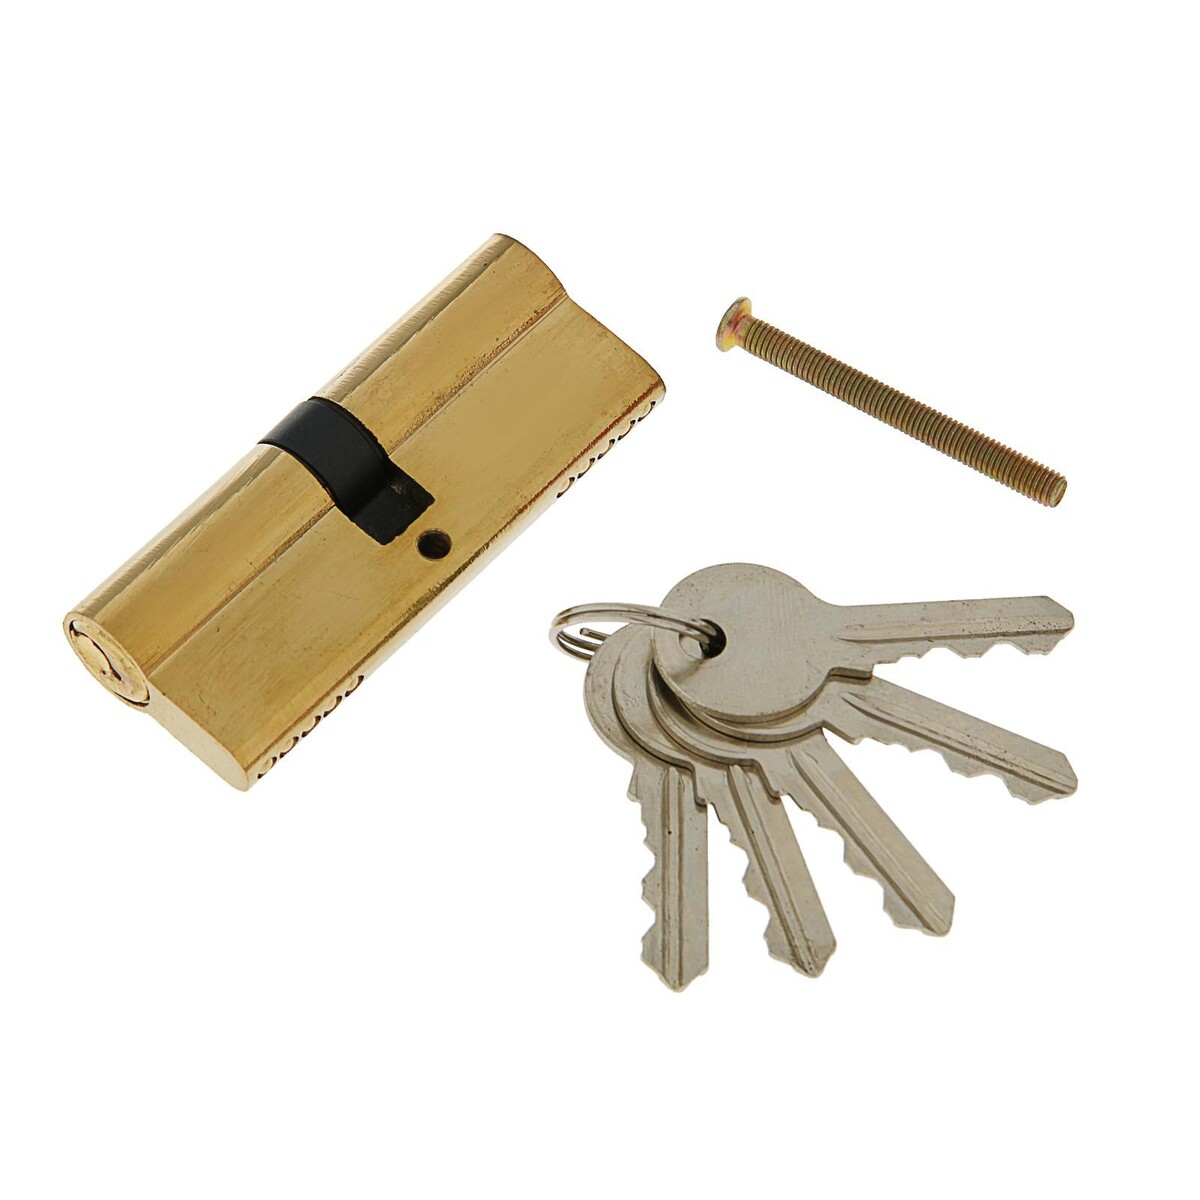 Цилиндровый механизм, 80 мм, английский ключ, 5 ключей, цвет золото замок навесной аллюр вс1ч 360 цилиндровый 5 ключей